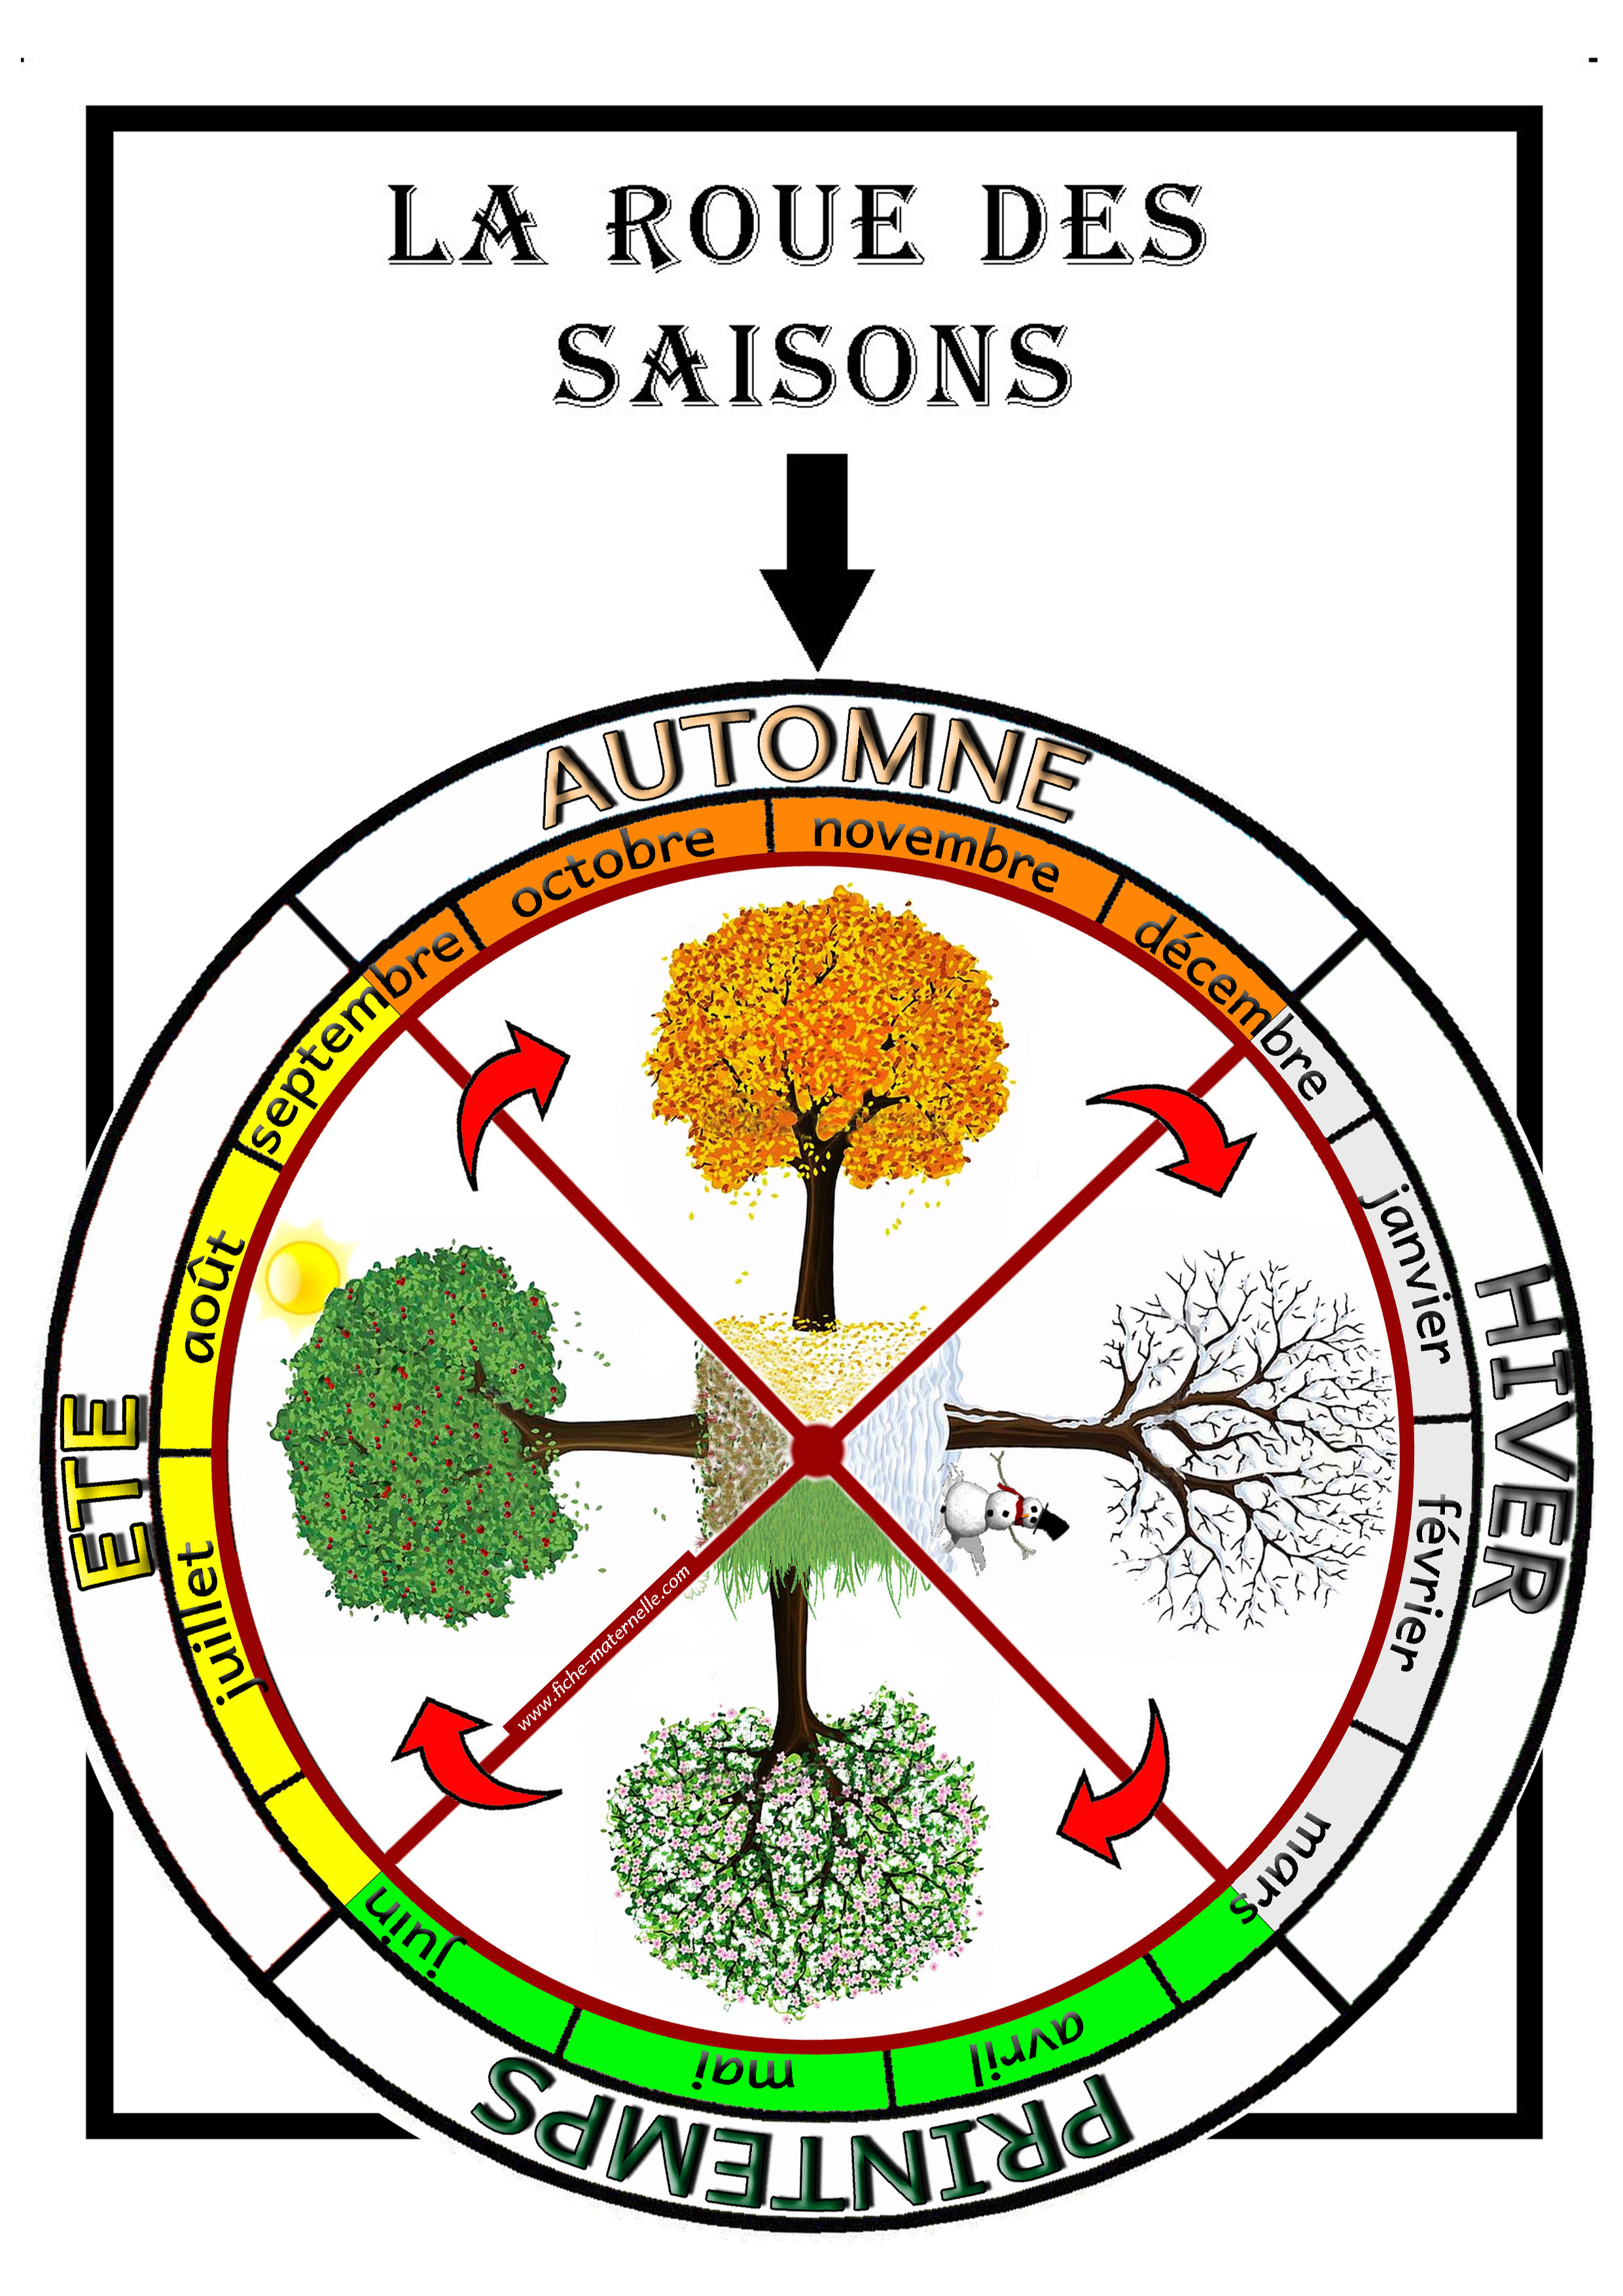 Affichage La Roue Des Saisons Constituer Une Roue Avec Les 4 Saisons Ainsi Que Leur Repartion Selon Les 12 Mois De L Annee